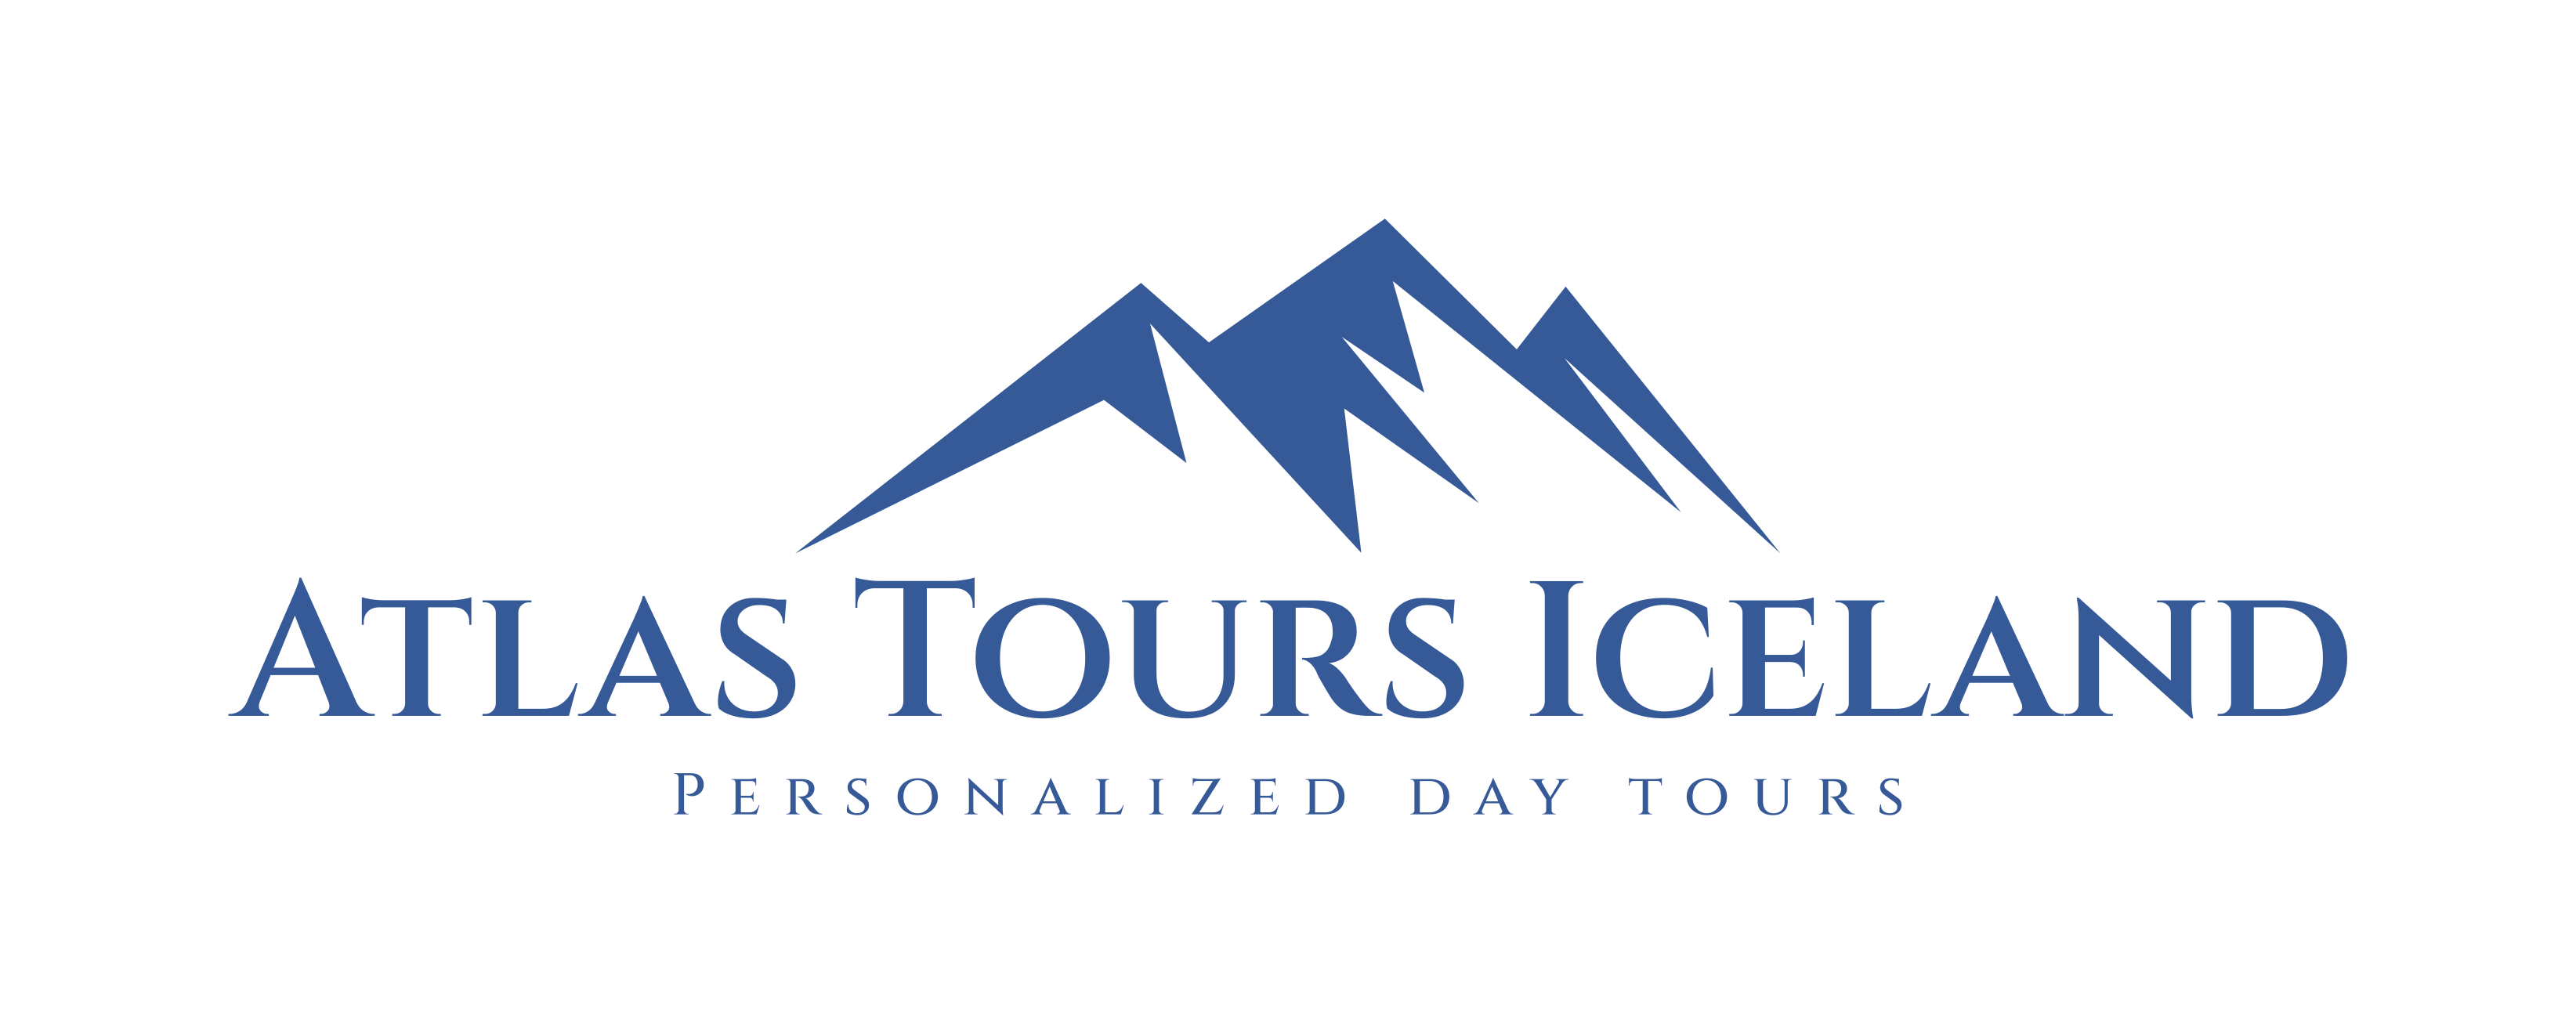 Atlas Tours Iceland